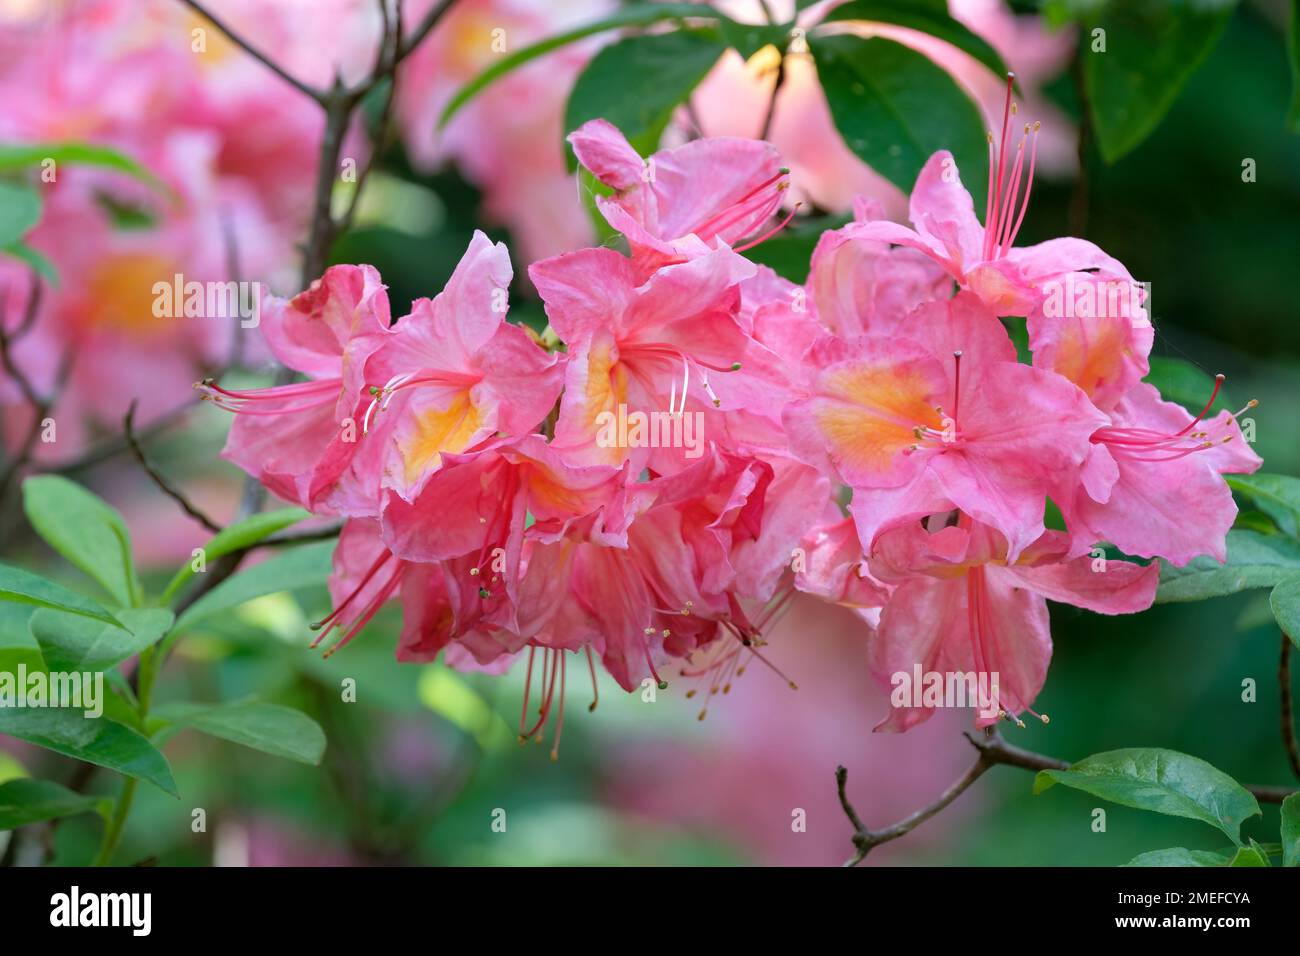 Rhododendron Pucella, Pucella azalea, Fanny azalea, arbuste à feuilles caduques, Gand hybride avec des fleurs rose pâle et violacé avec une tache orange Banque D'Images